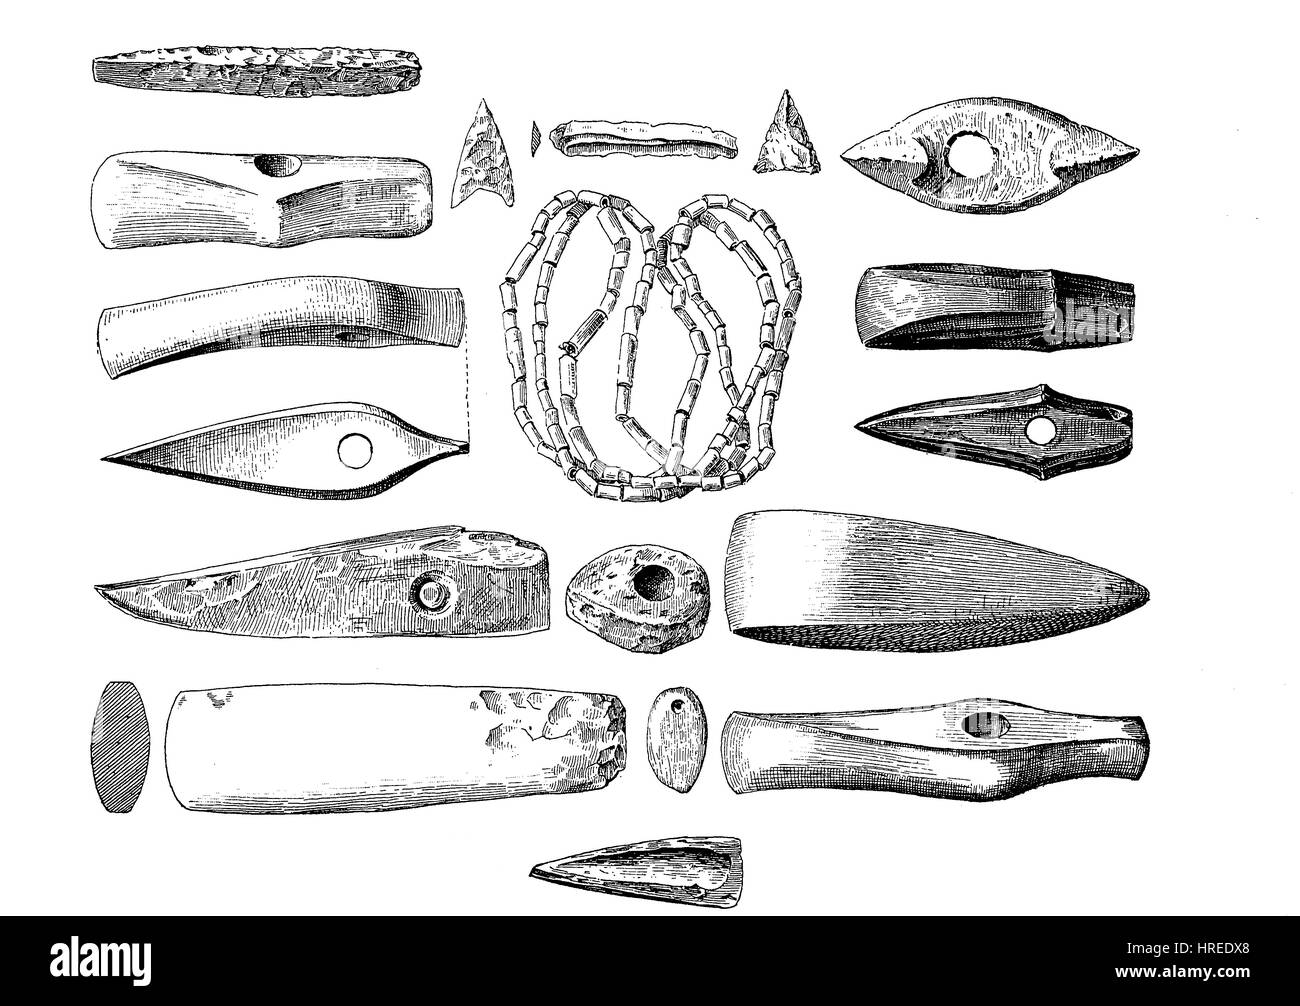 Armi, gioielli e gli utensili dall'età della pietra, Germania, riproduzione di una xilografia dal xix secolo, 1885 Foto Stock